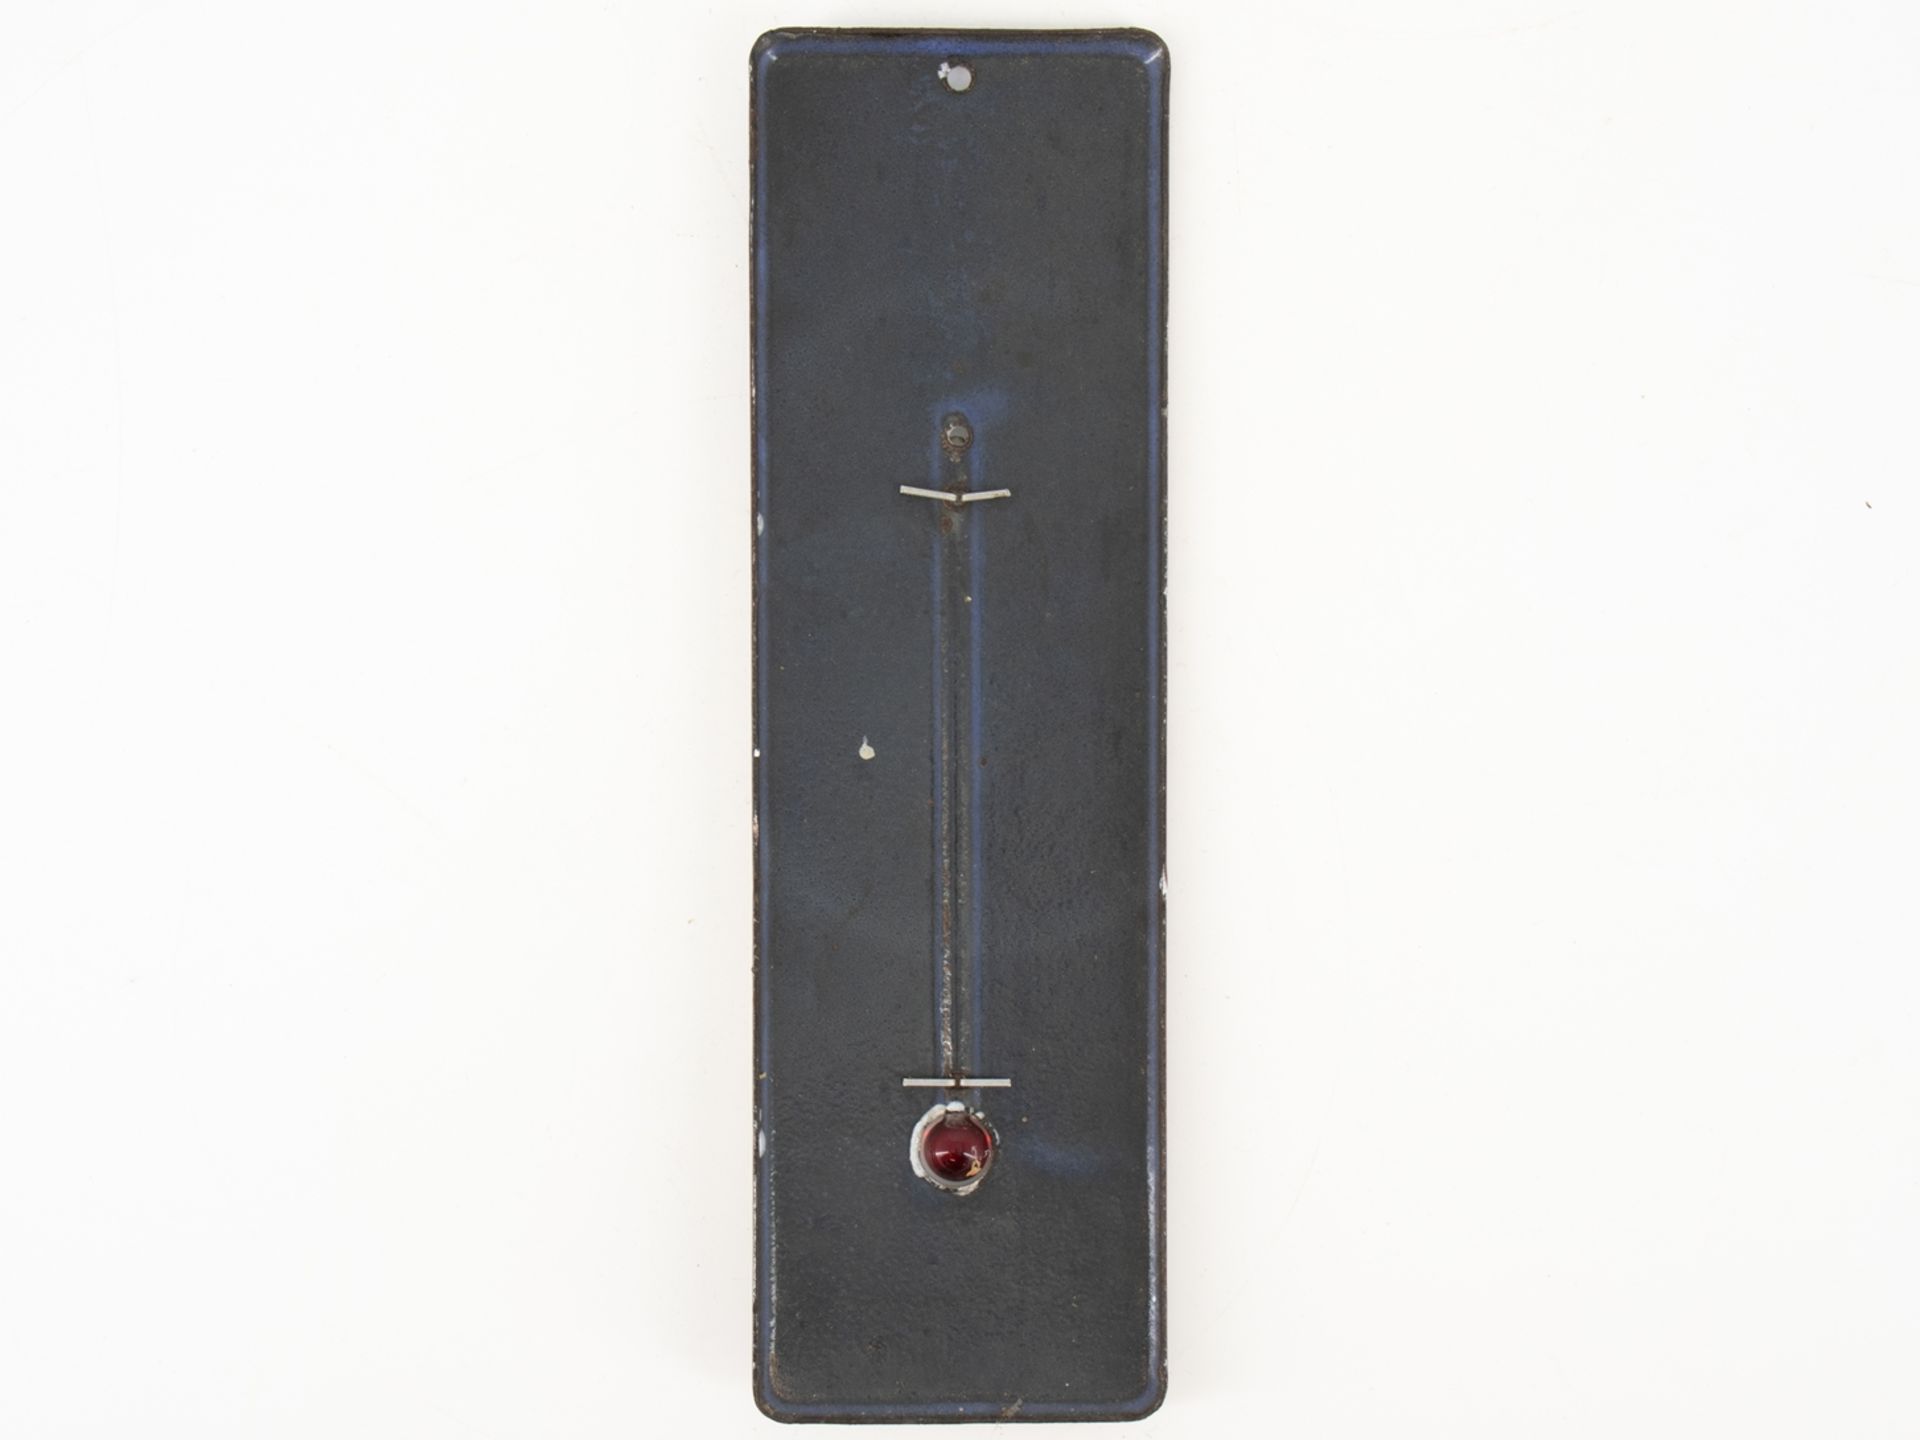 Enamel plate thermometer, Schramberger Emaillierwerke, Schweizer & Söhne, around 1930 - Image 2 of 3